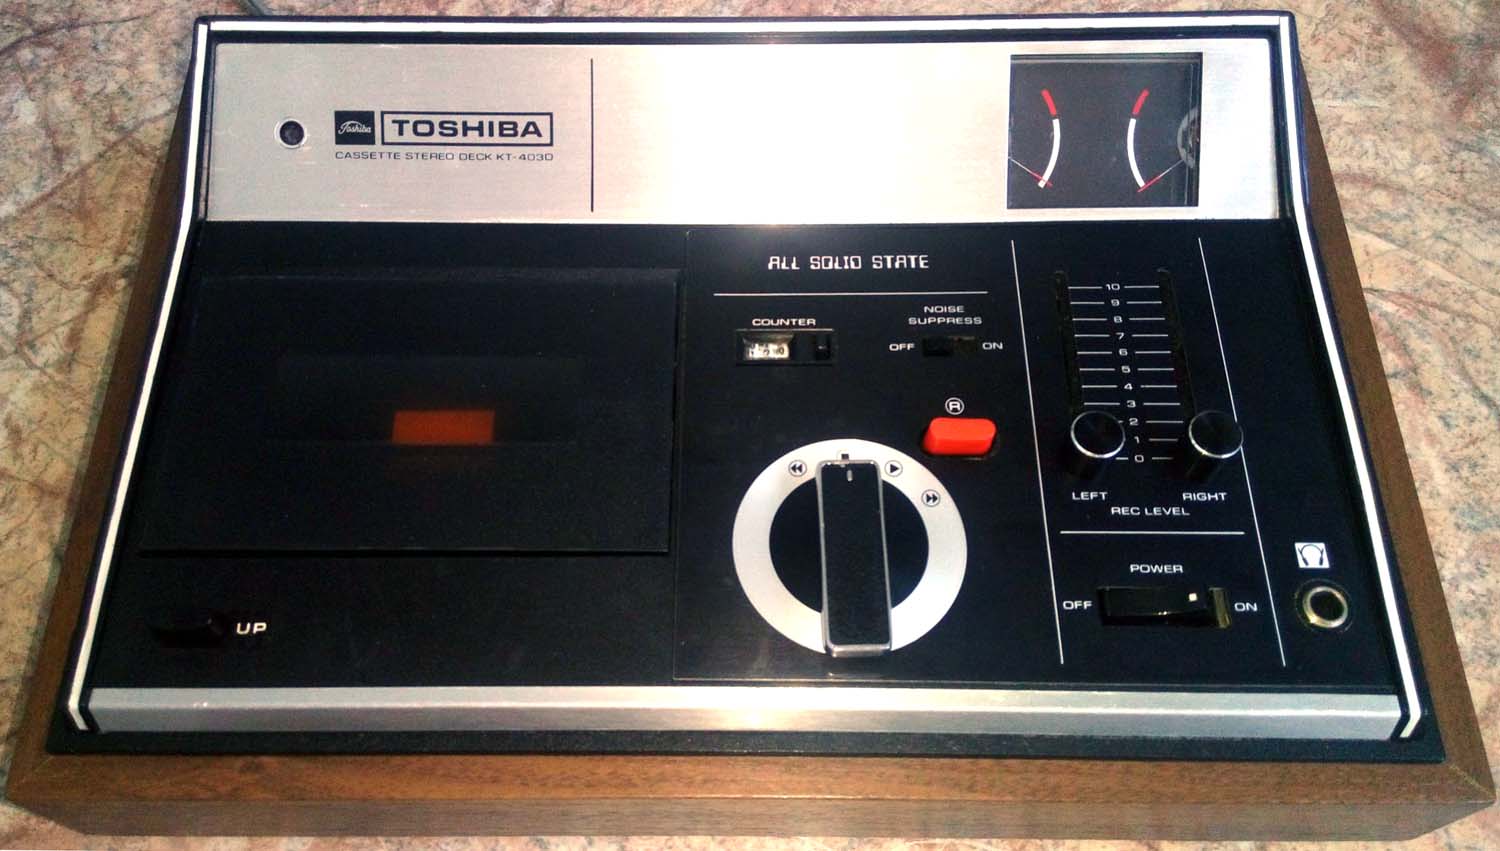 Ранняя кассетная дека Toshiba с верхней загрузкой и дисковым колёсным управлением